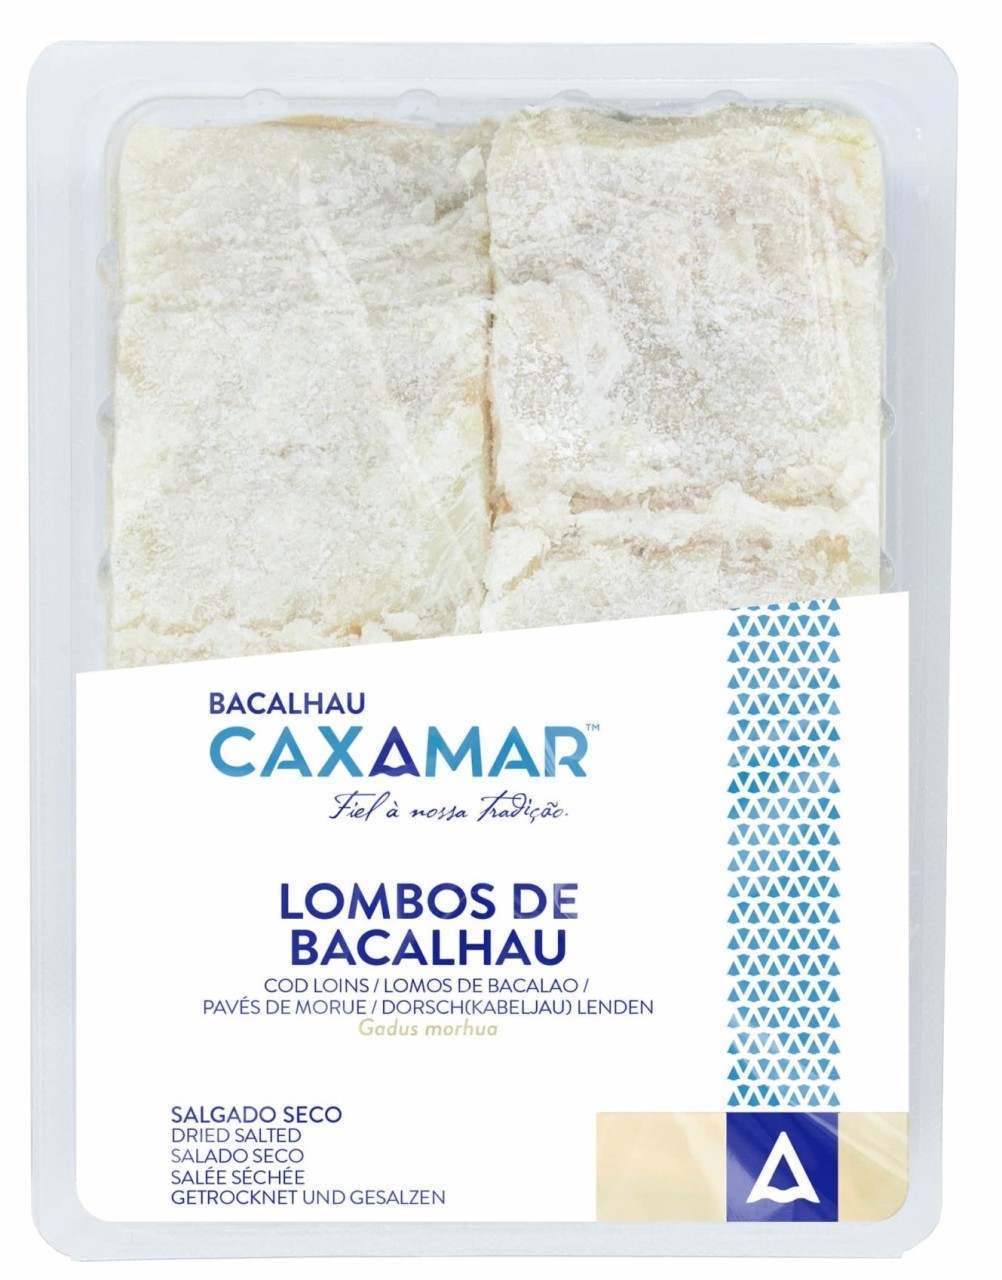 Kabeljau-Lenden - Lombos de Bacalhau 600gr. - Caxamar - Portugal